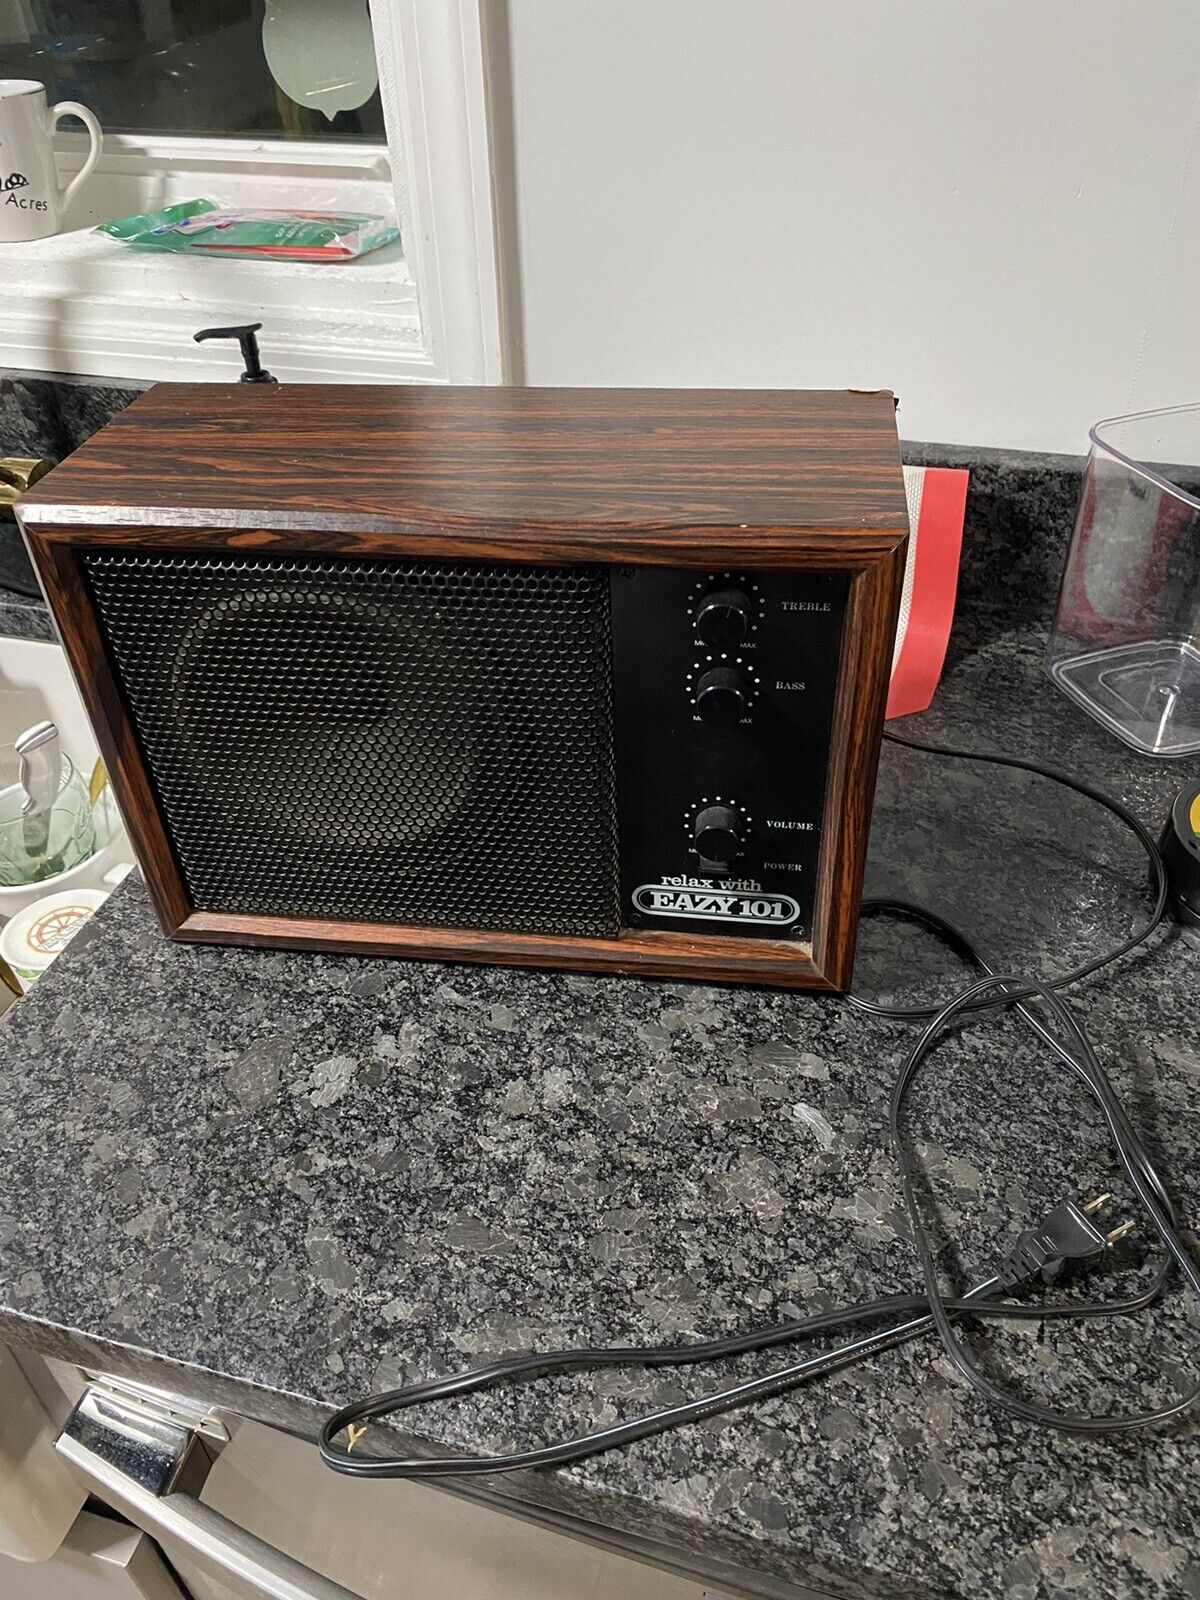 Vintage EAZY 101 Fixed-Tuned Speaker Radio Philadelphia Station - Tested & Works